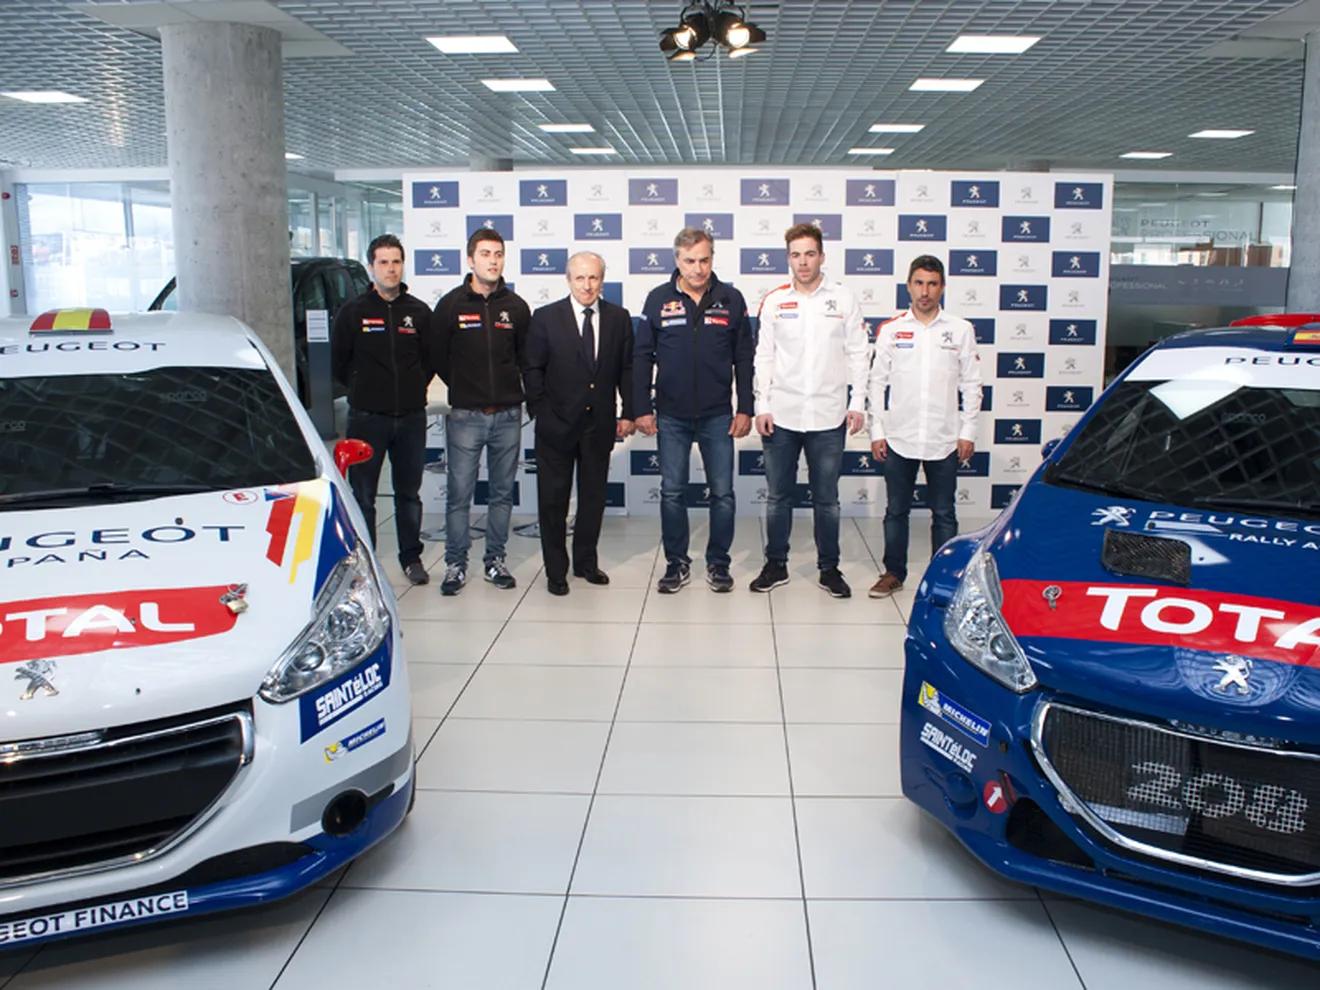 Presentación del equipo Peugeot España Racing Team